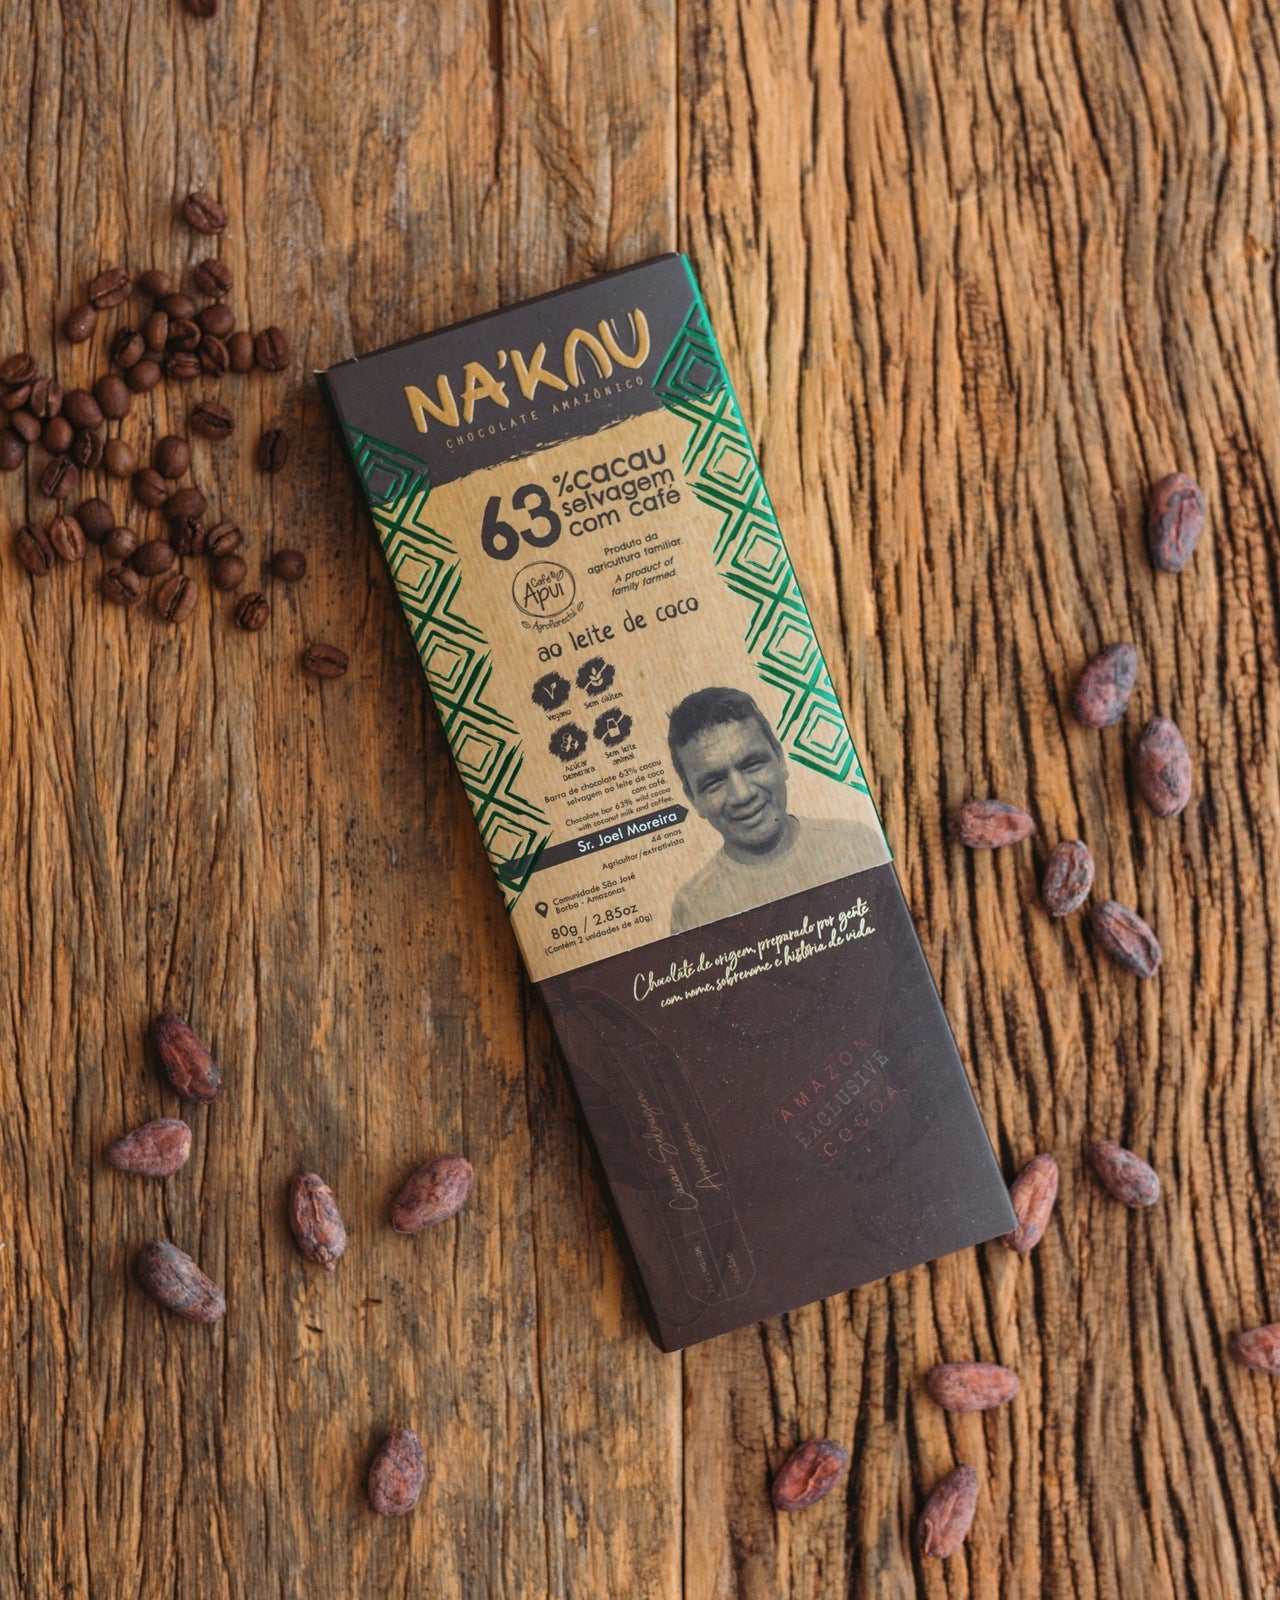 Chocolate Na'kau 63% cacau ao leite de coco com Café Apuí